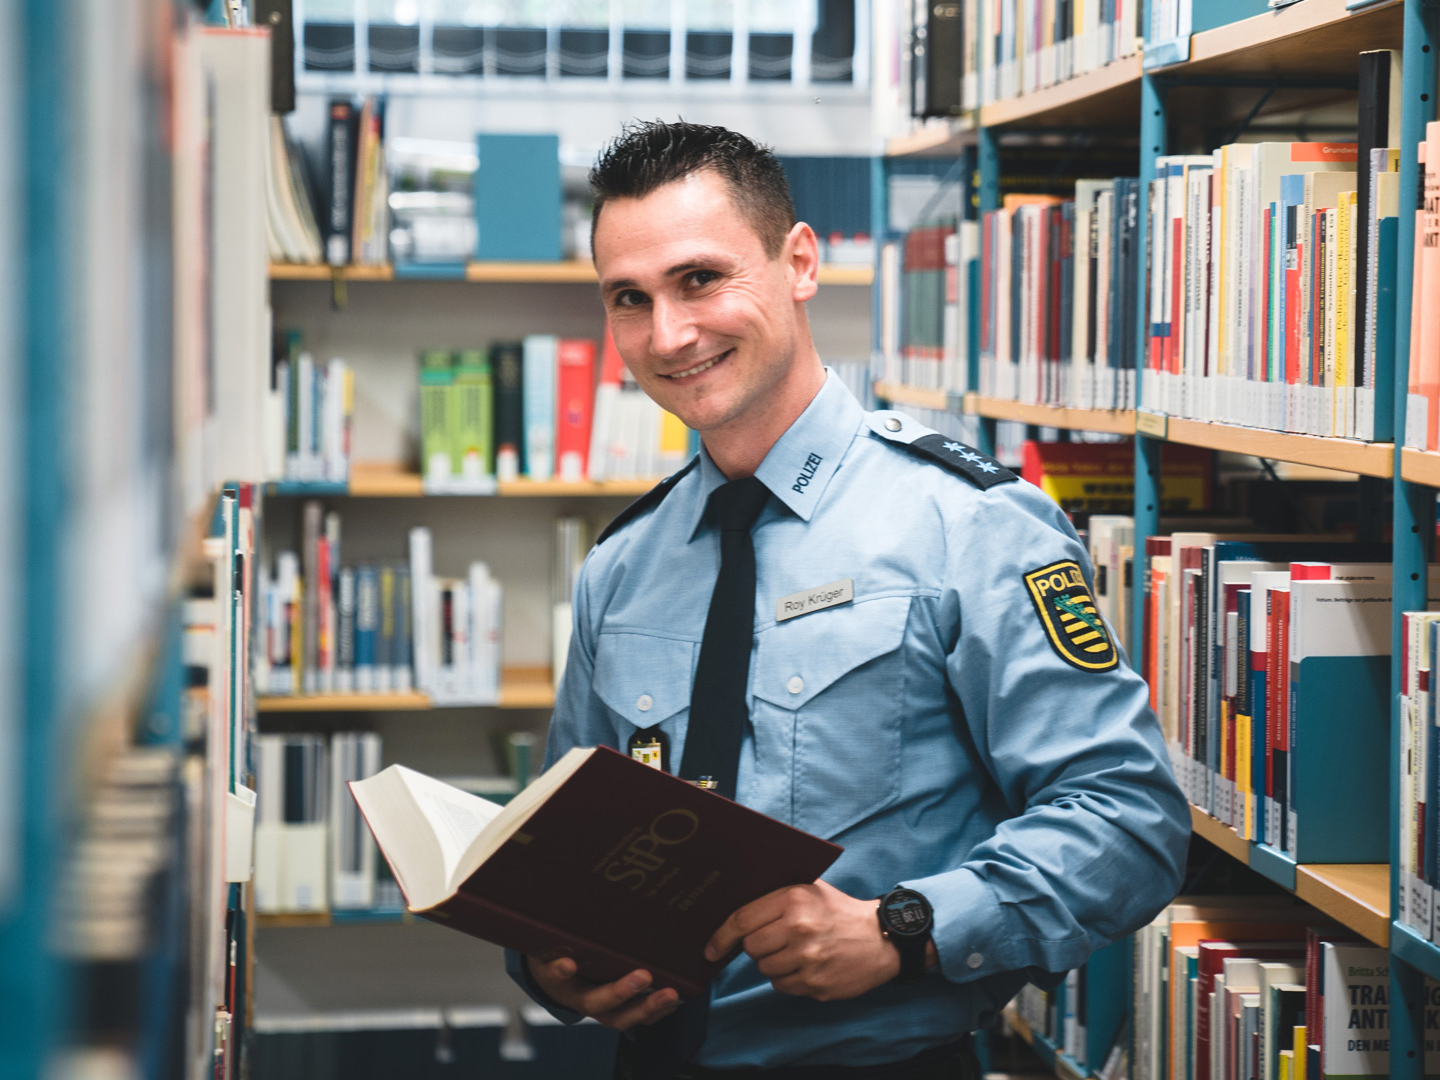 Polizist Roy in der Bibliothek der Hochschule